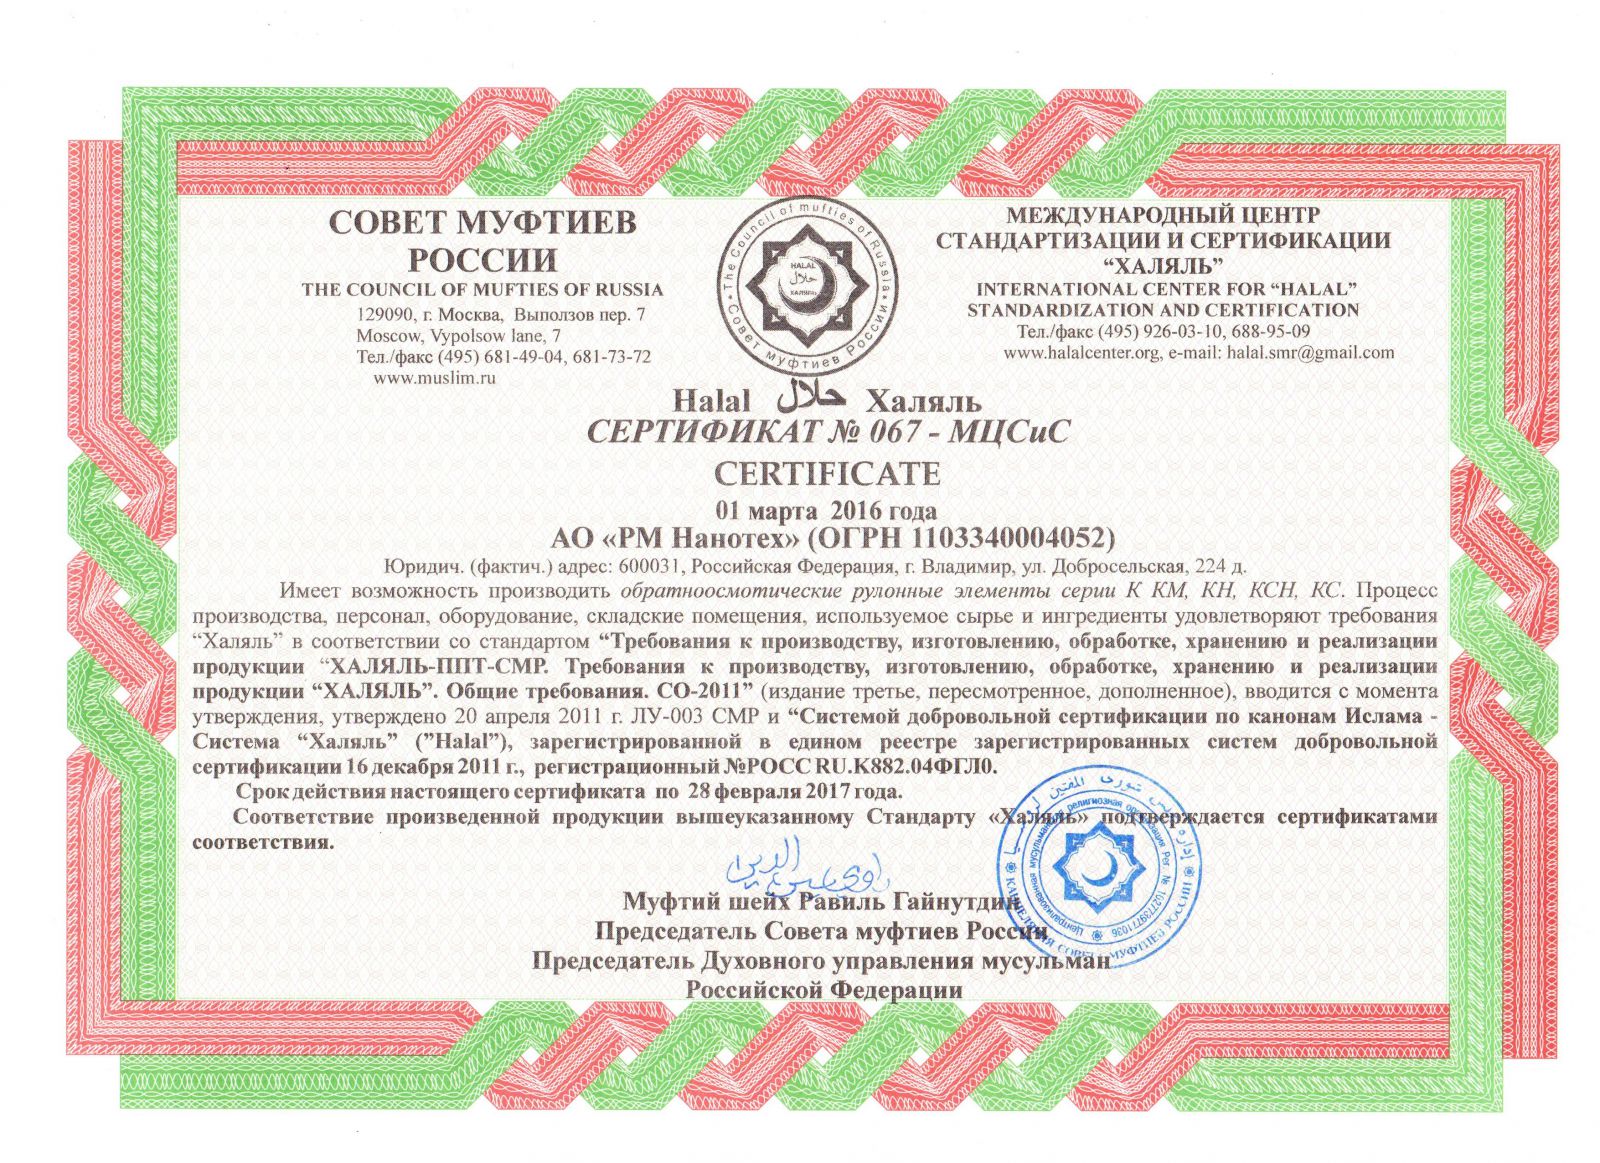 Сыворотка халяль. Сертификат Халяль. Сертификат соответствия Халяль. Международный центр стандартизации и сертификации Халяль. Продукция сертифицирована Халяль.